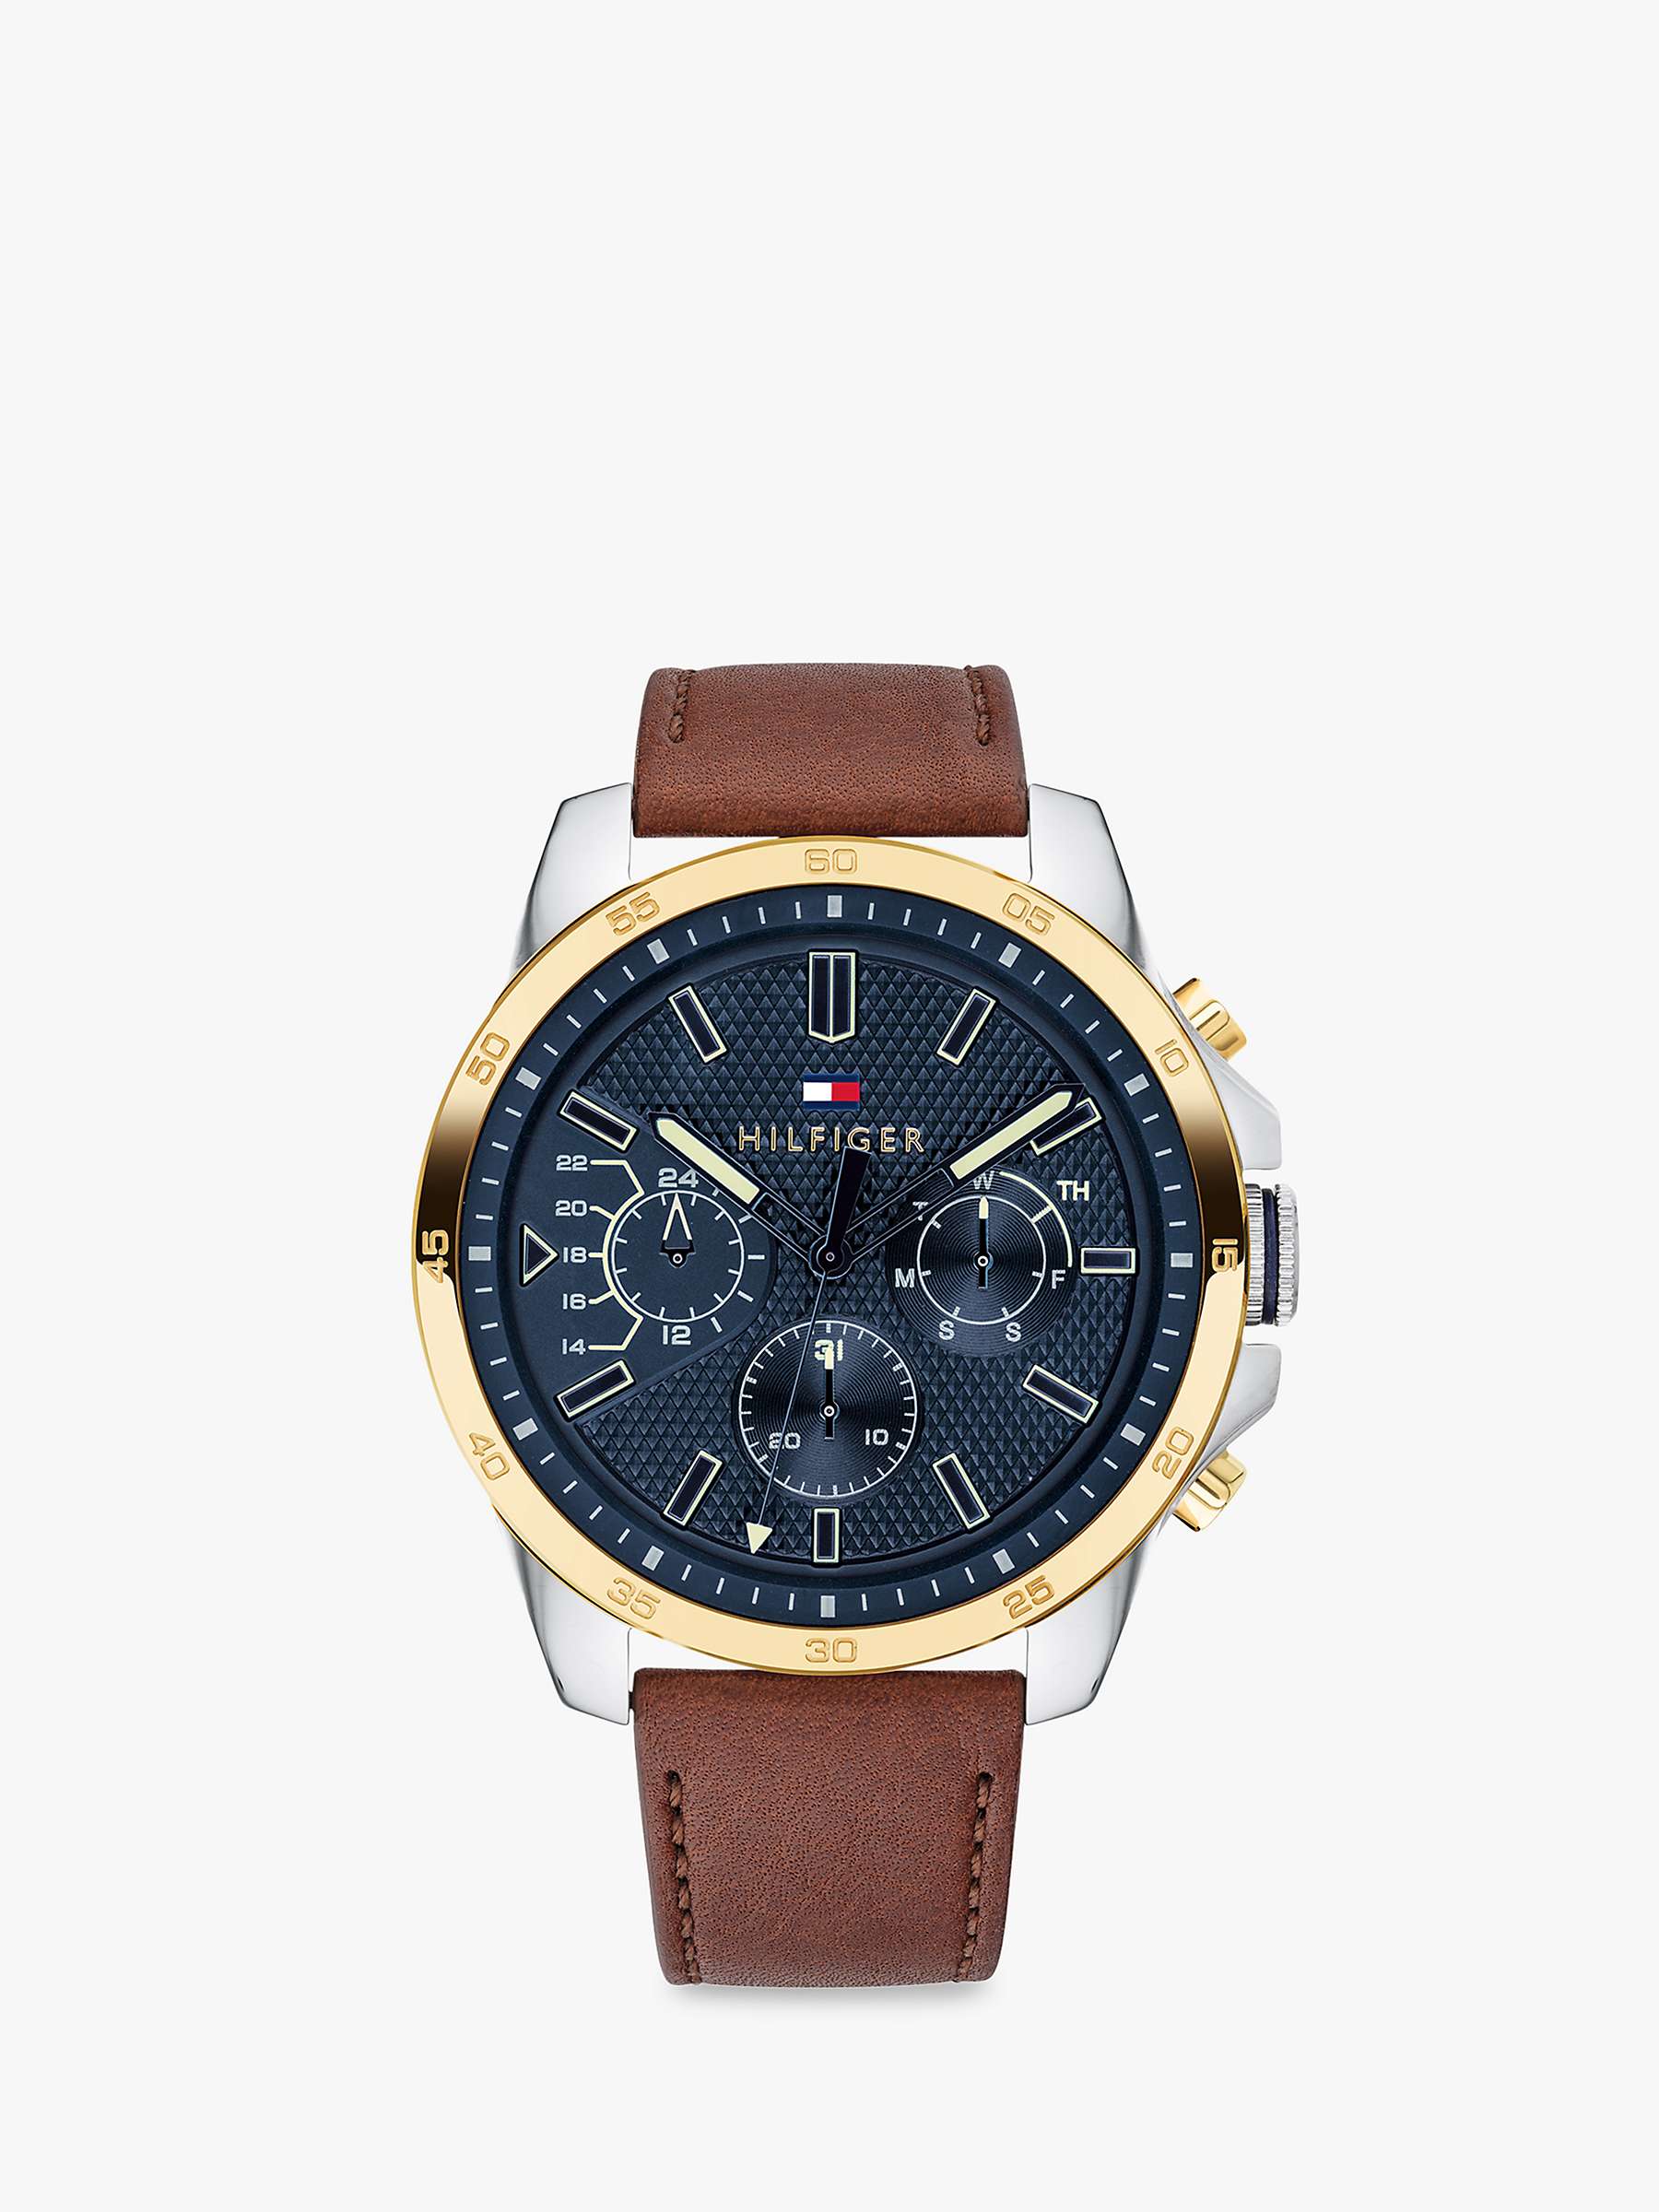 Marine fordøjelse åndelig Tommy Hilfiger 1791561 Men's Chronograph Leather Strap Watch, Brown/Blue at  John Lewis & Partners